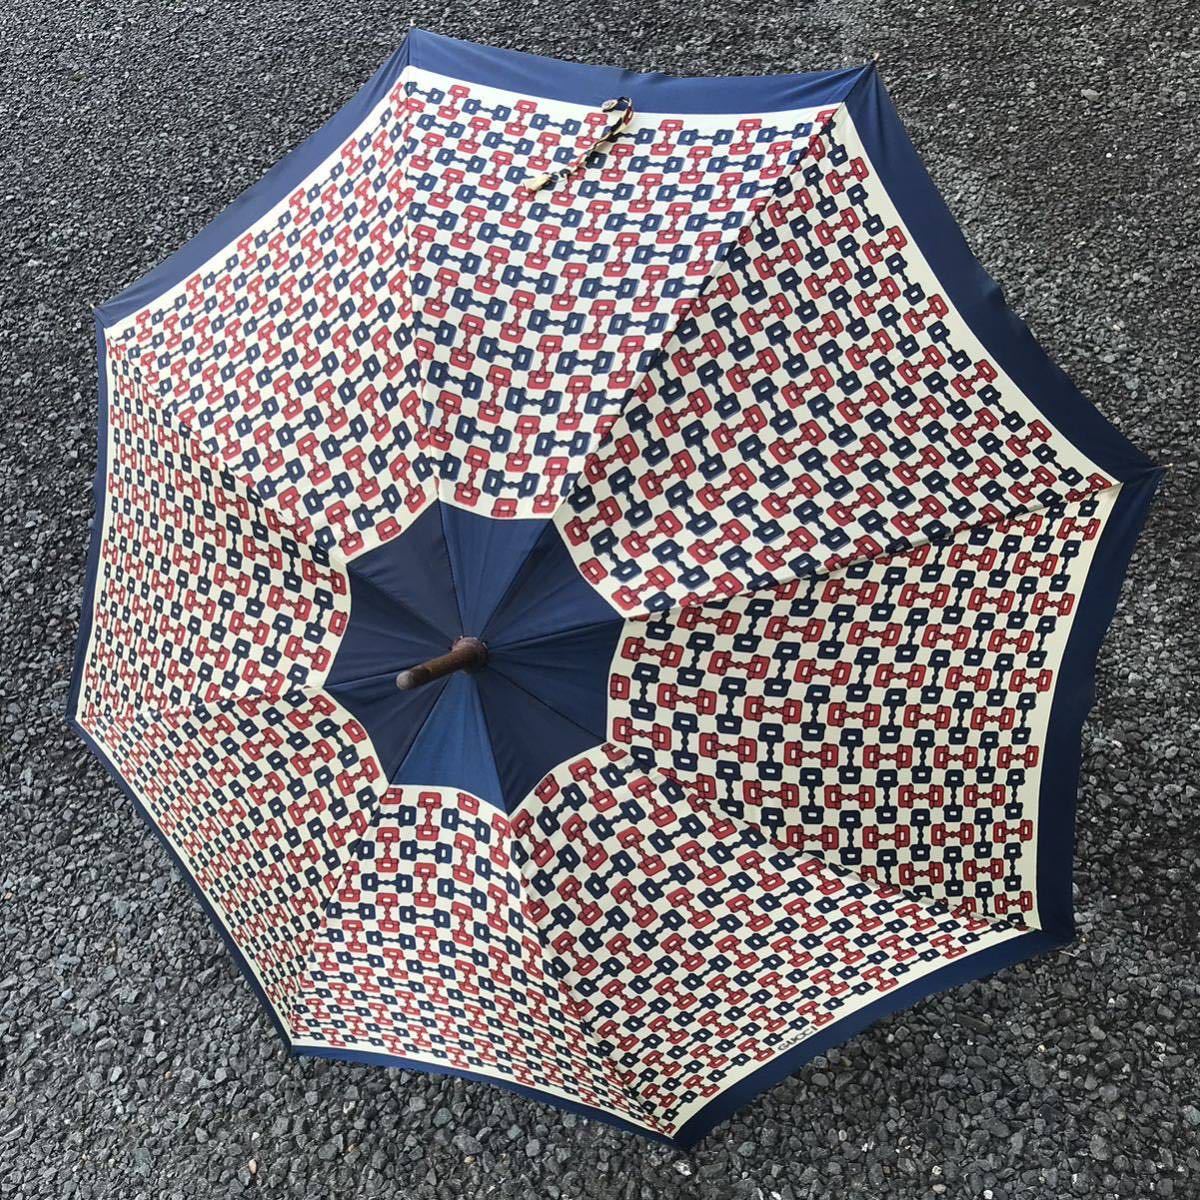 【グッチ】本物 GUCCI 傘 ホースビット 全長92cm 雨傘 アンブレラ 雨具 長傘 メンズ レディース イタリア製_画像4